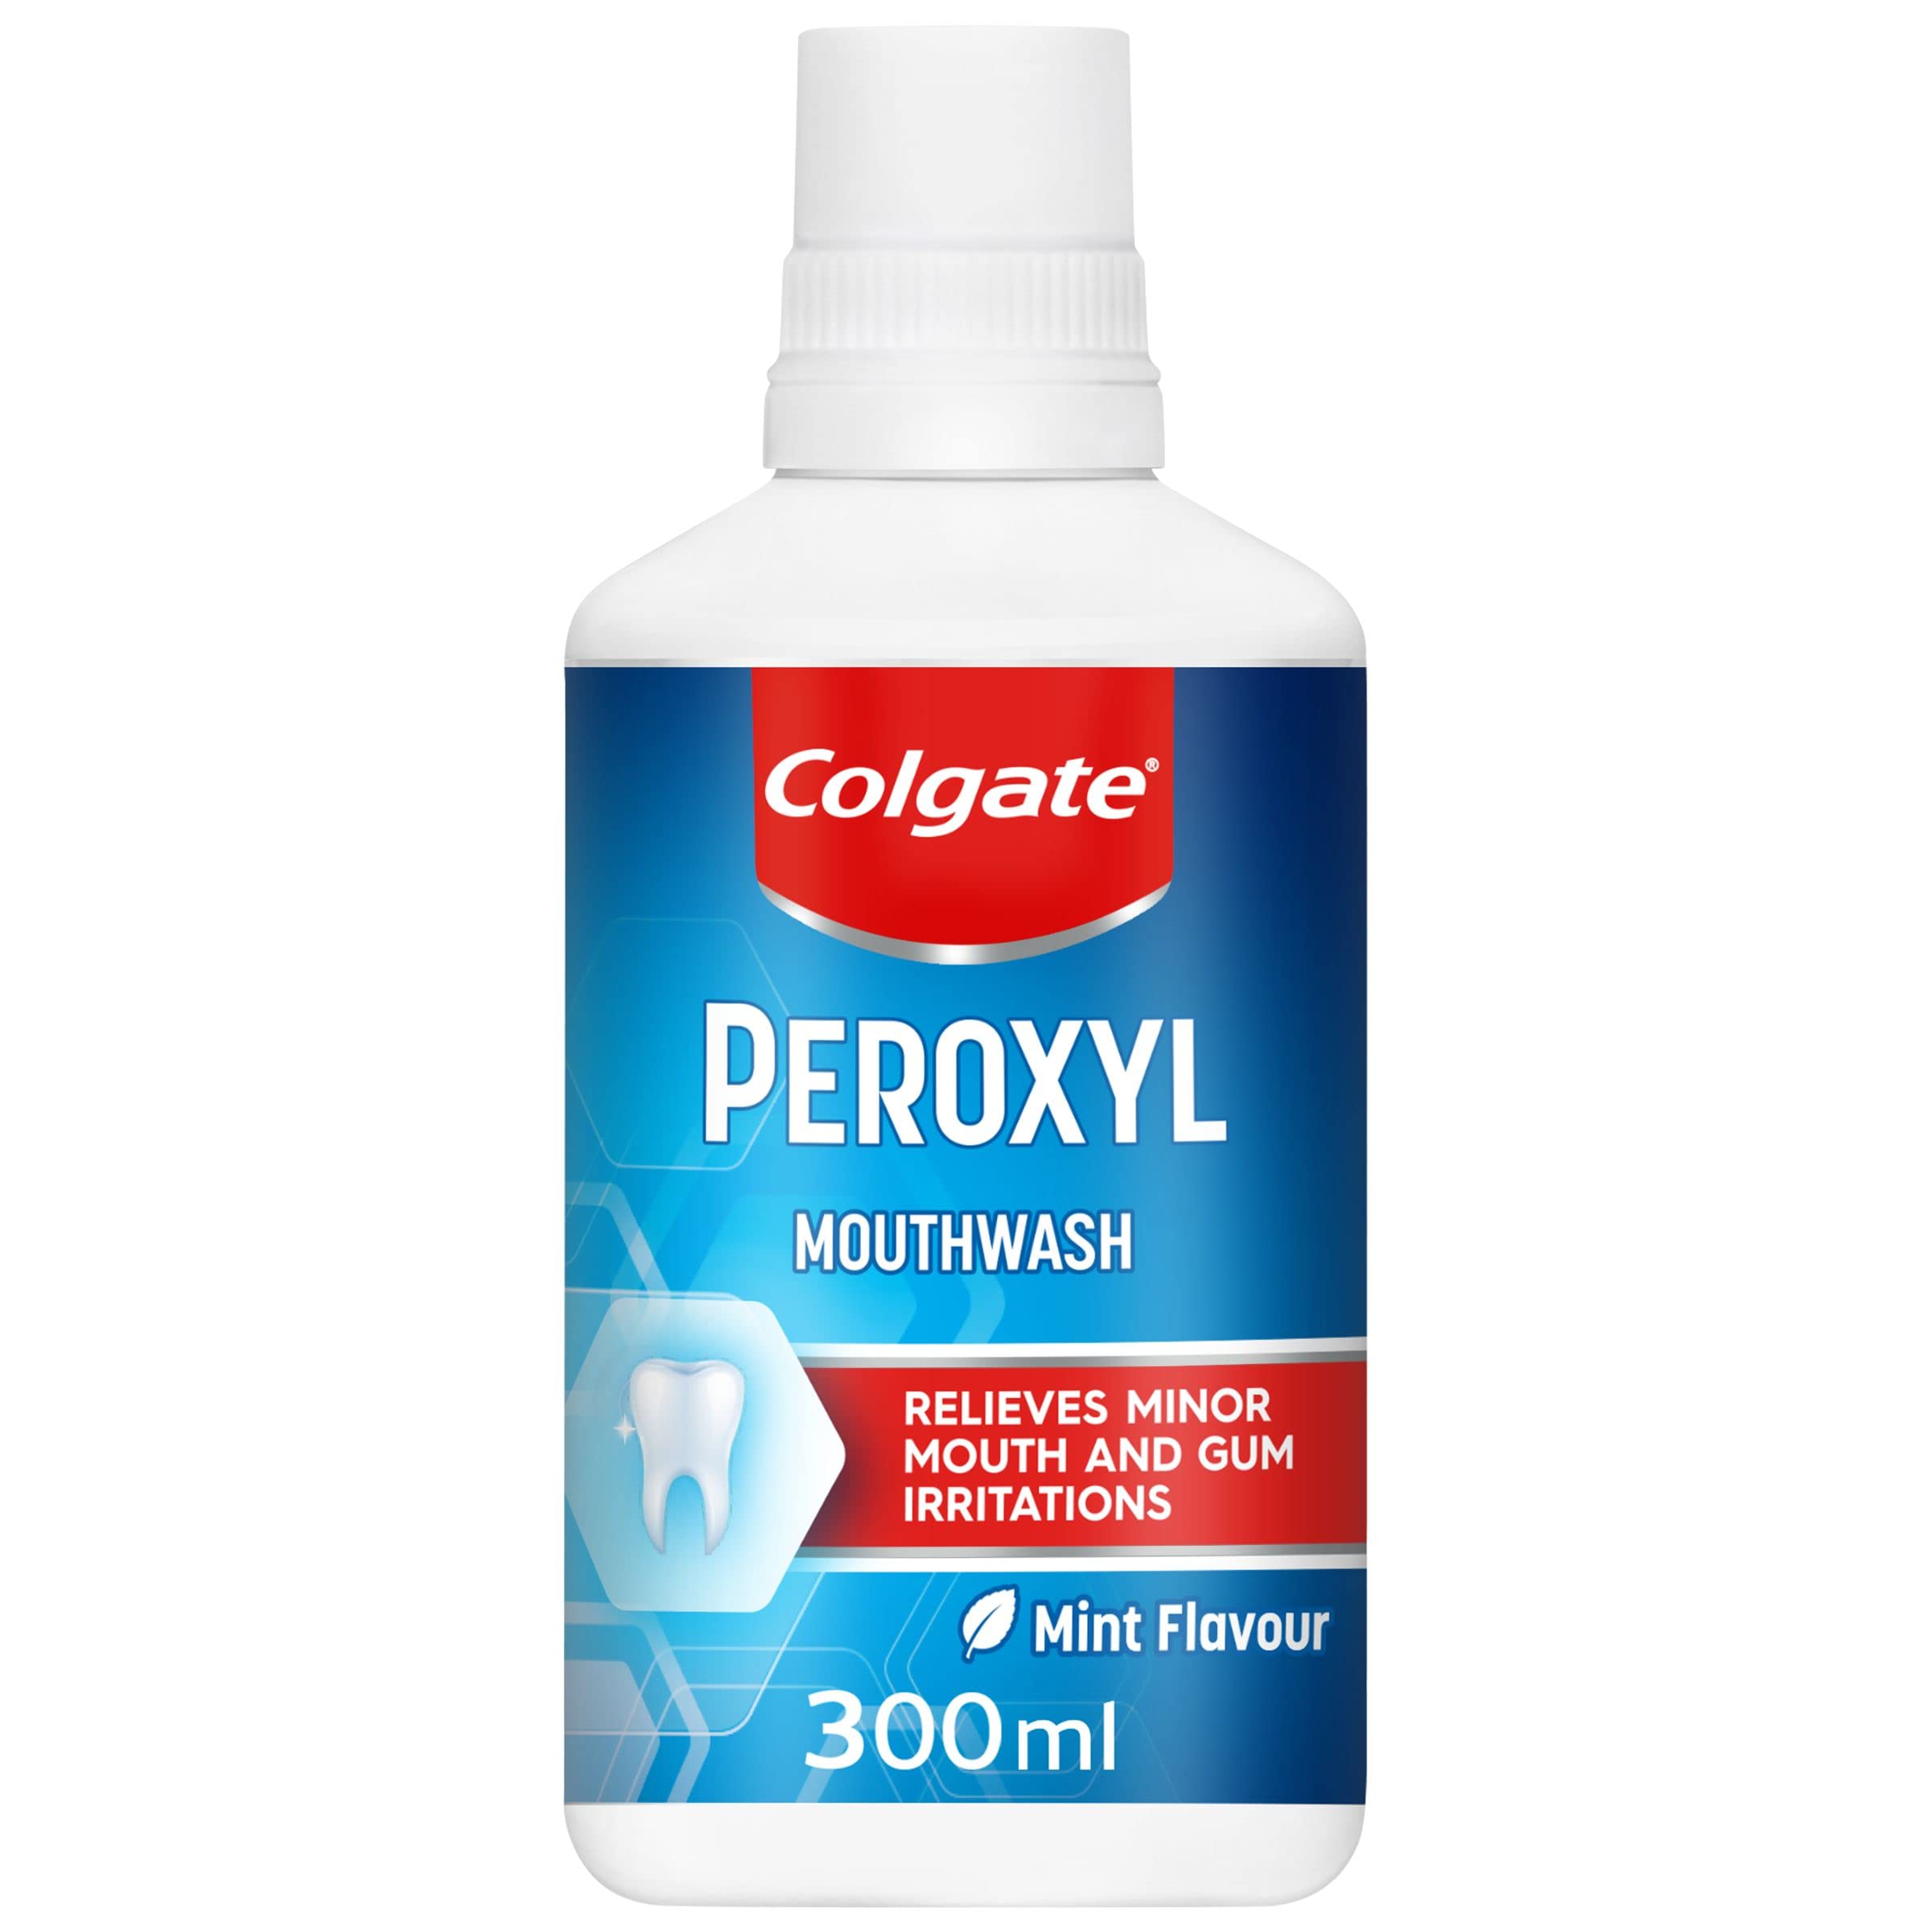 Colgate Peroxyl Mint Flavour Mouthwash, 300ml